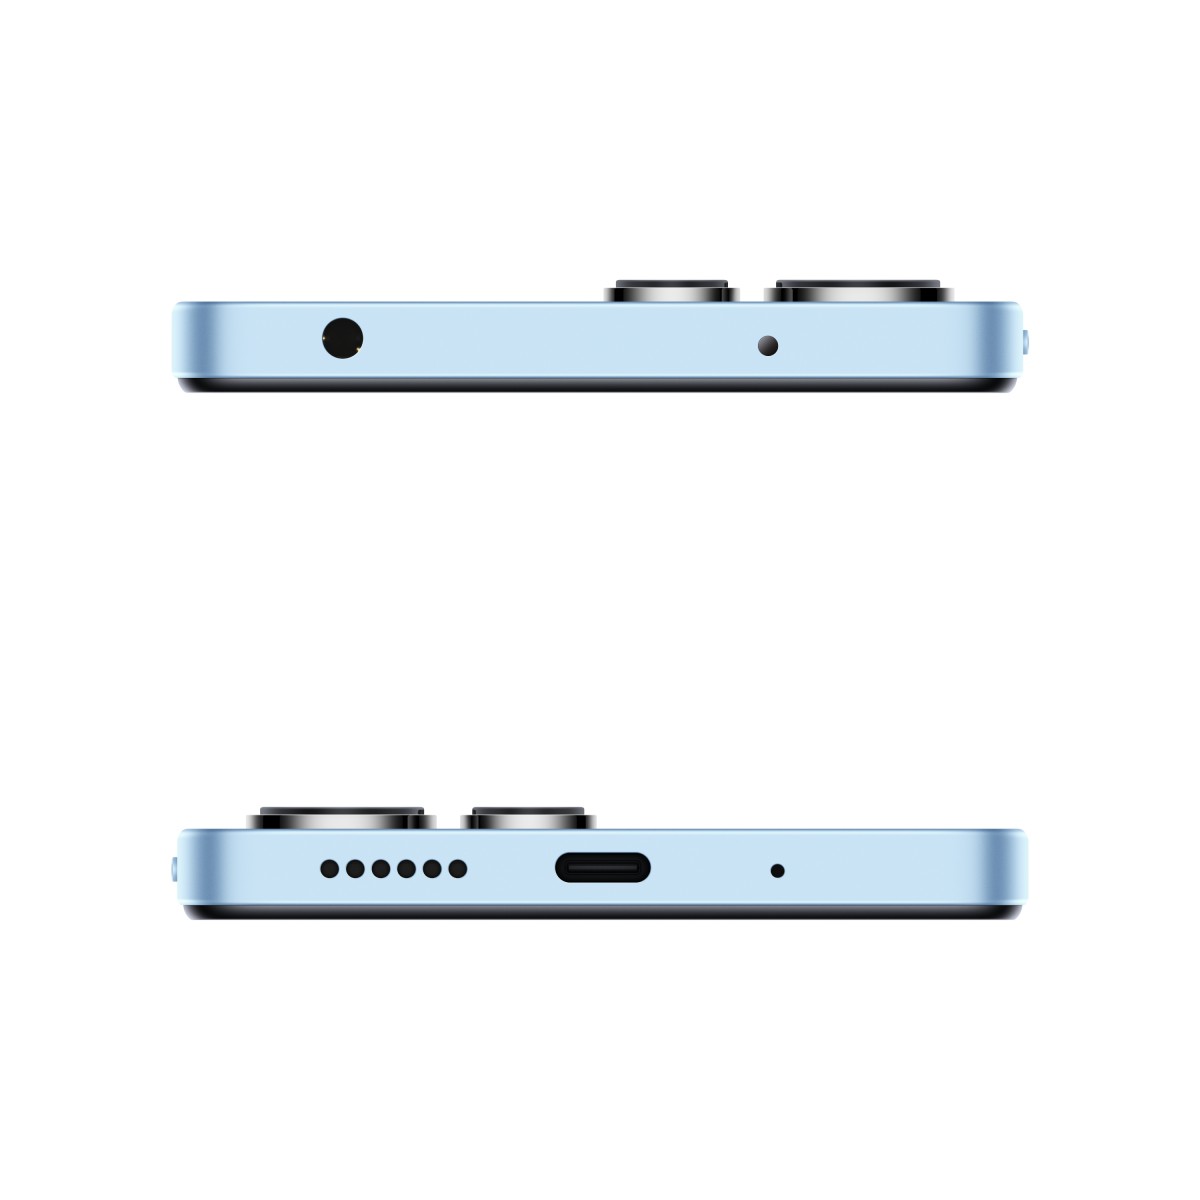 جوال ريدمي 12 NFC ثنائي الشريحة بذاكرة رام سعة 8 جيجابايت وذاكرة داخلية سعة 256 بلون أزرق سماوي ويدعم تقنية 4G - إصدار عالمي